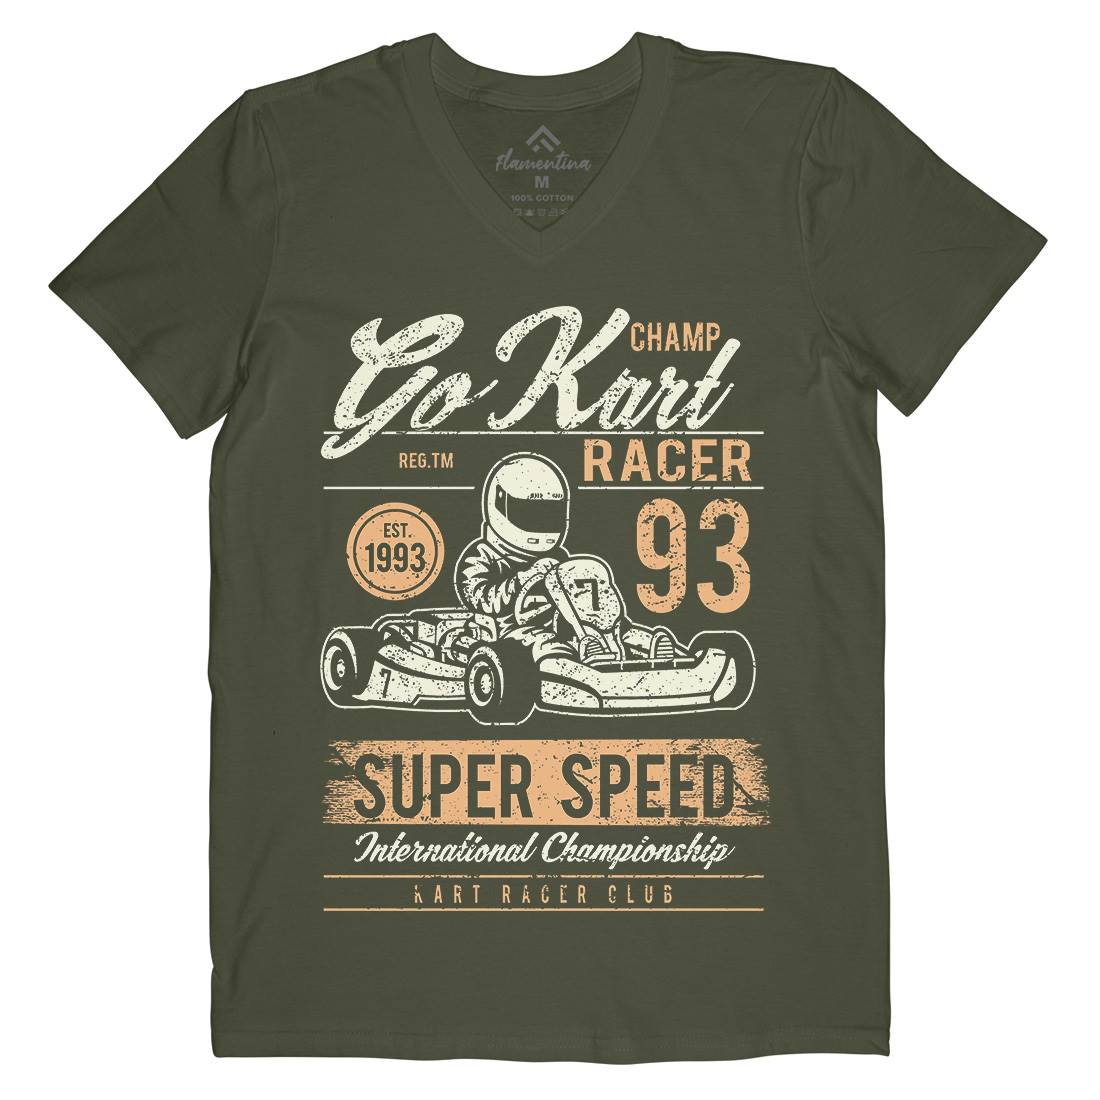 Go Kart Racer Mens Organic V-Neck T-Shirt Cars A058